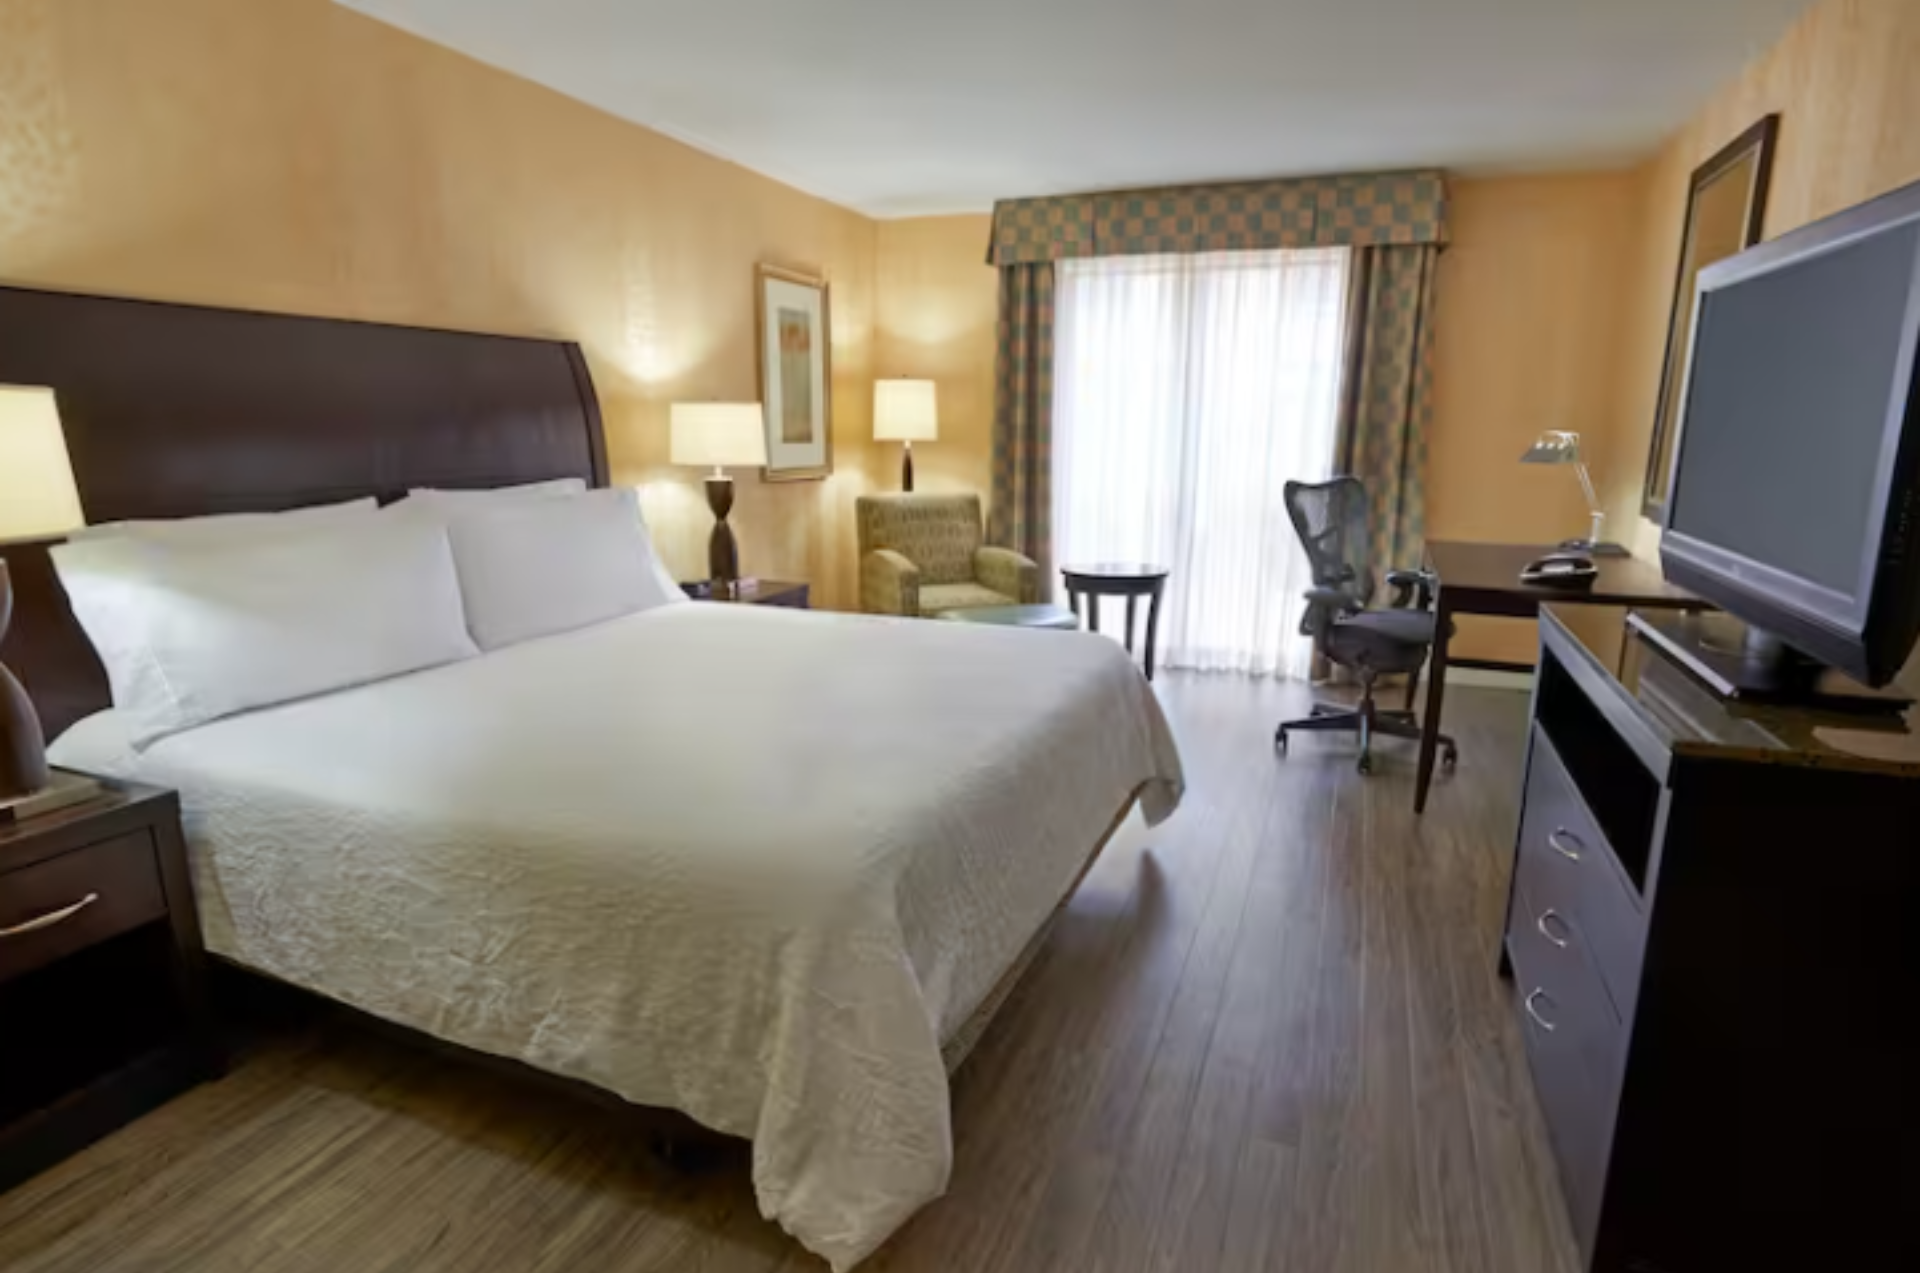 Hilton hotel king size bedroom/ Chambre à coucher de l'hôtel Hilton